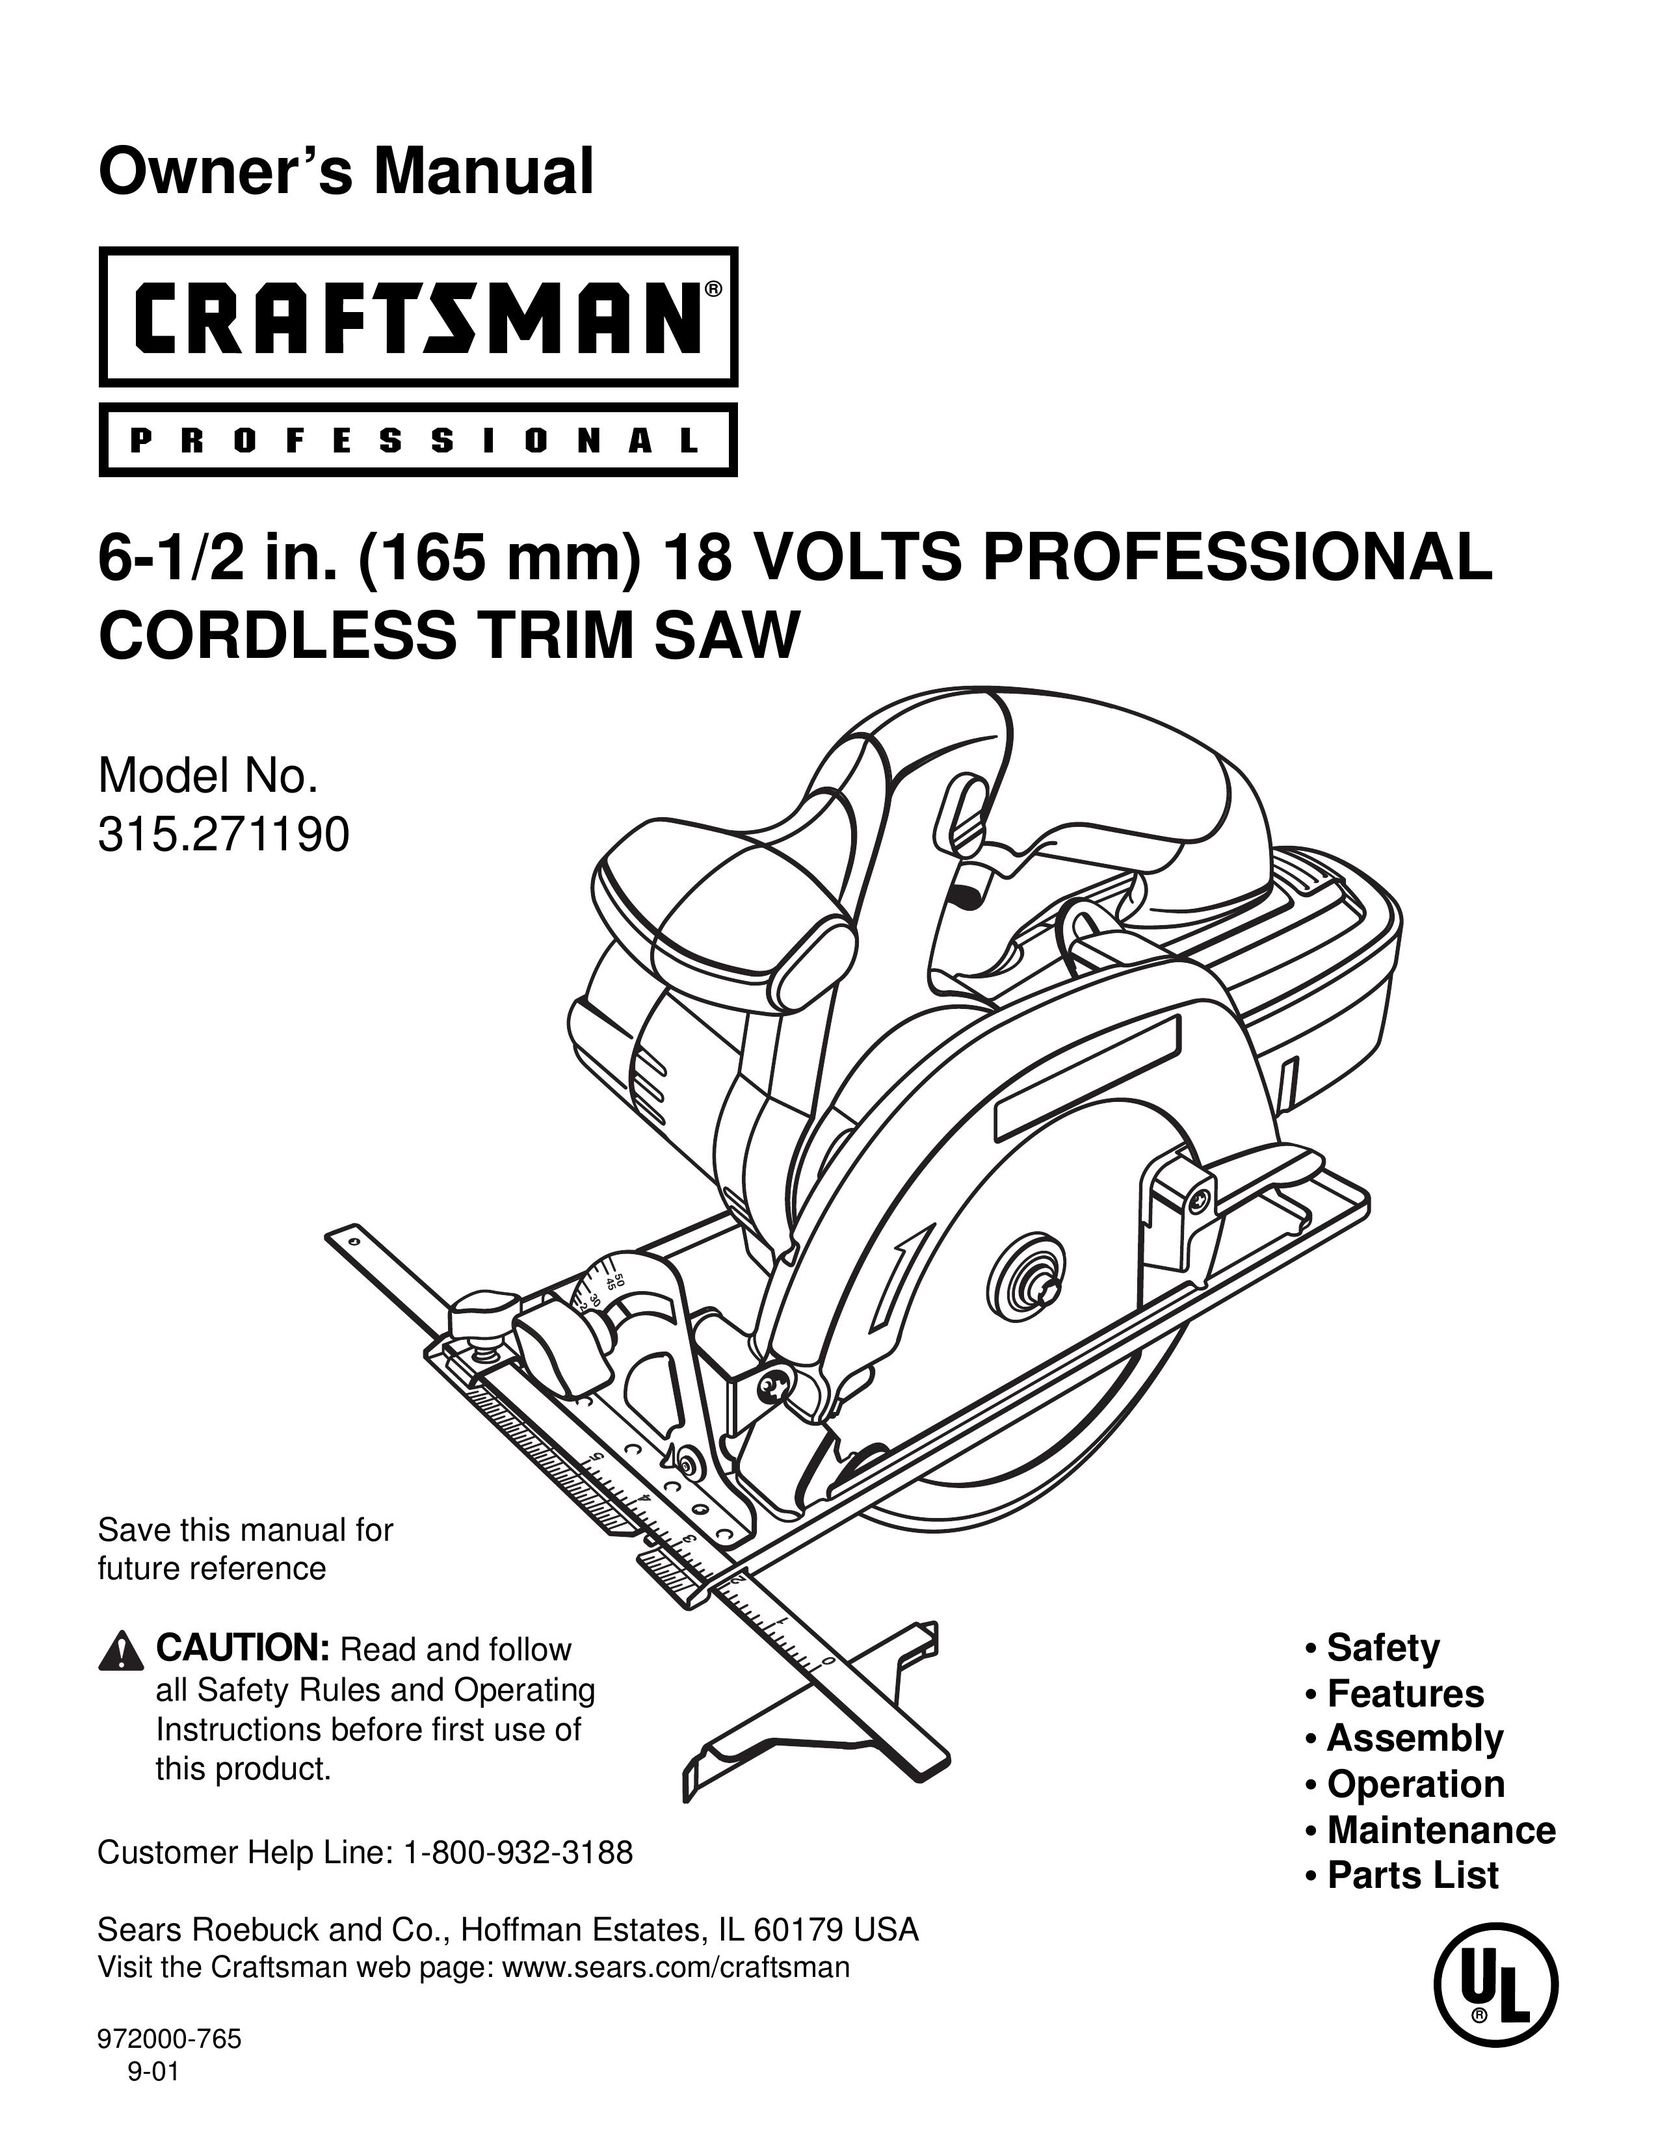 Craftsman 315.27119 Cordless Saw User Manual